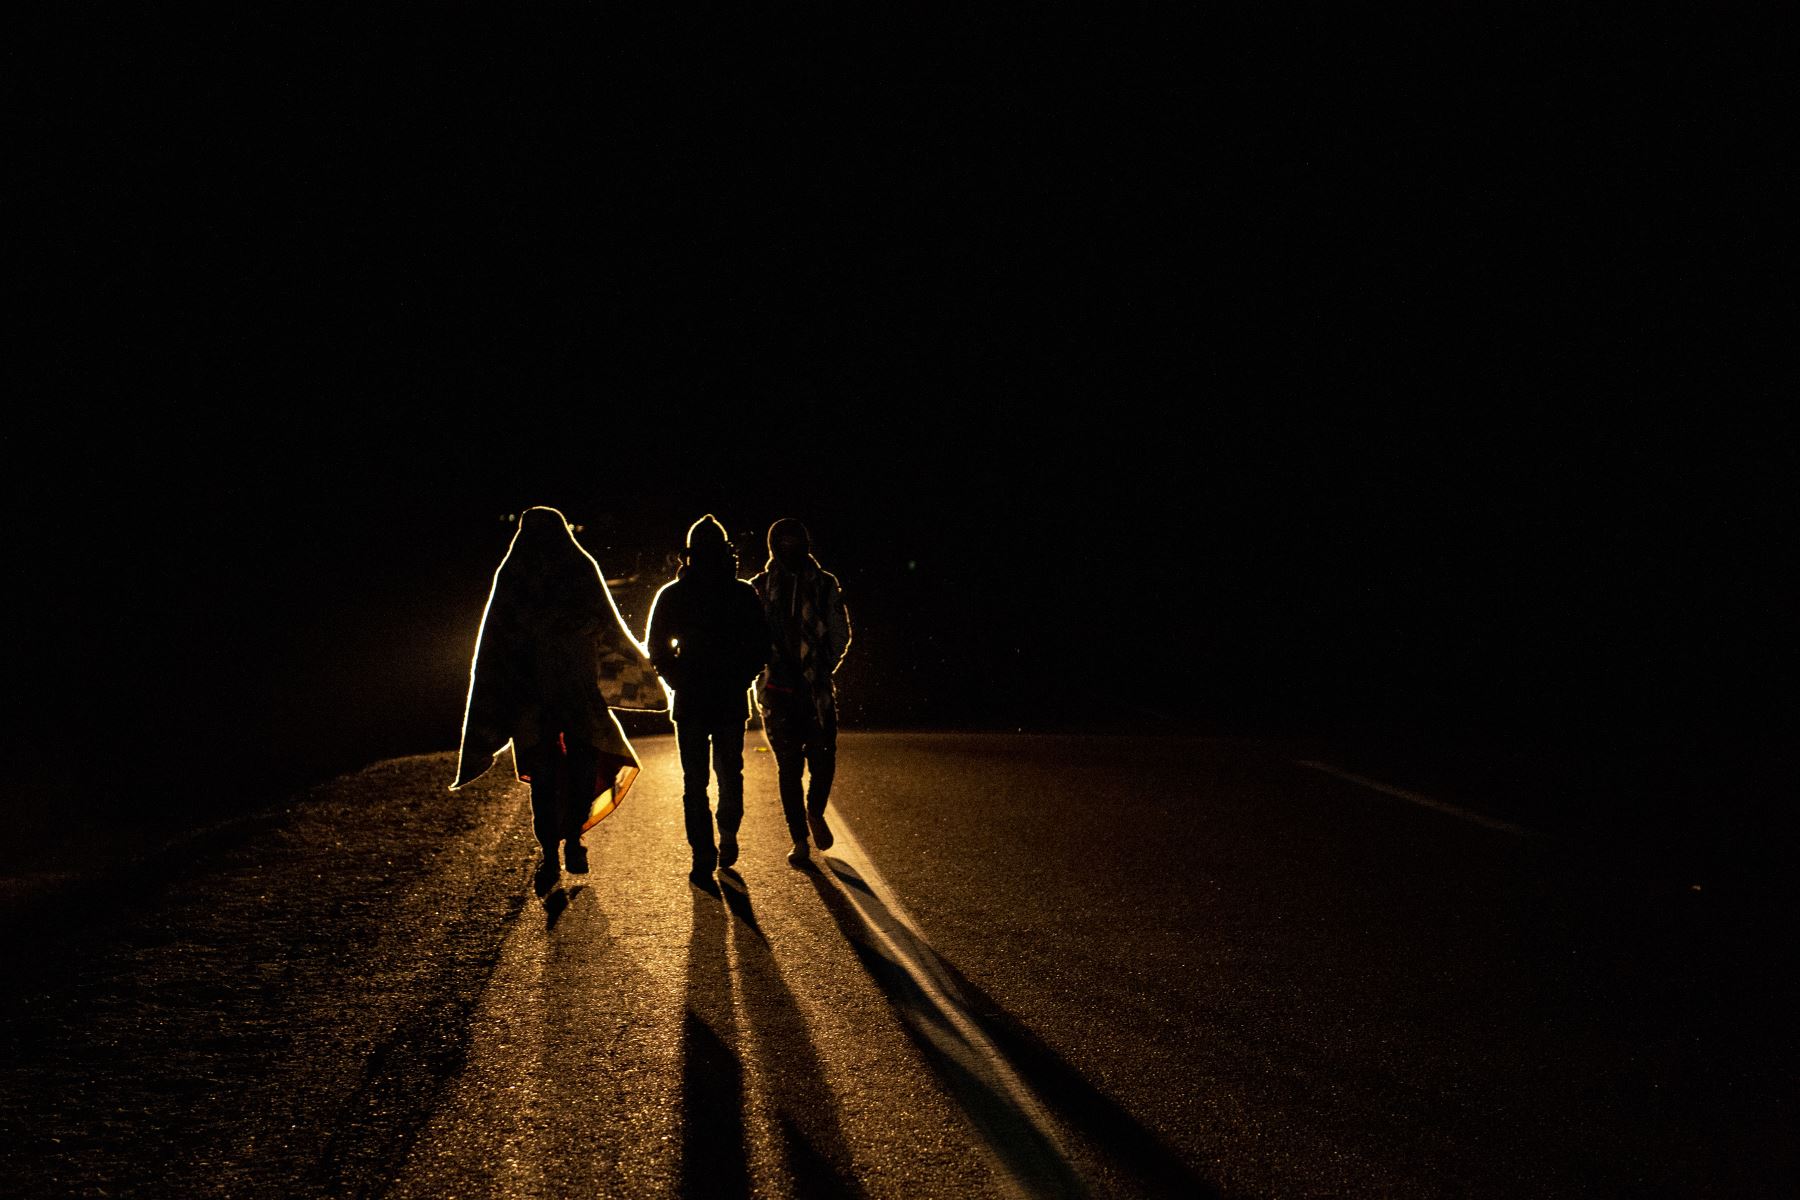 El migrante venezolano Rubi Alexander G. y amigos caminan bajo temperaturas frías en la noche por la carretera que une Colchane con Iquique, luego de cruzar desde Bolivia. Foto: AFP